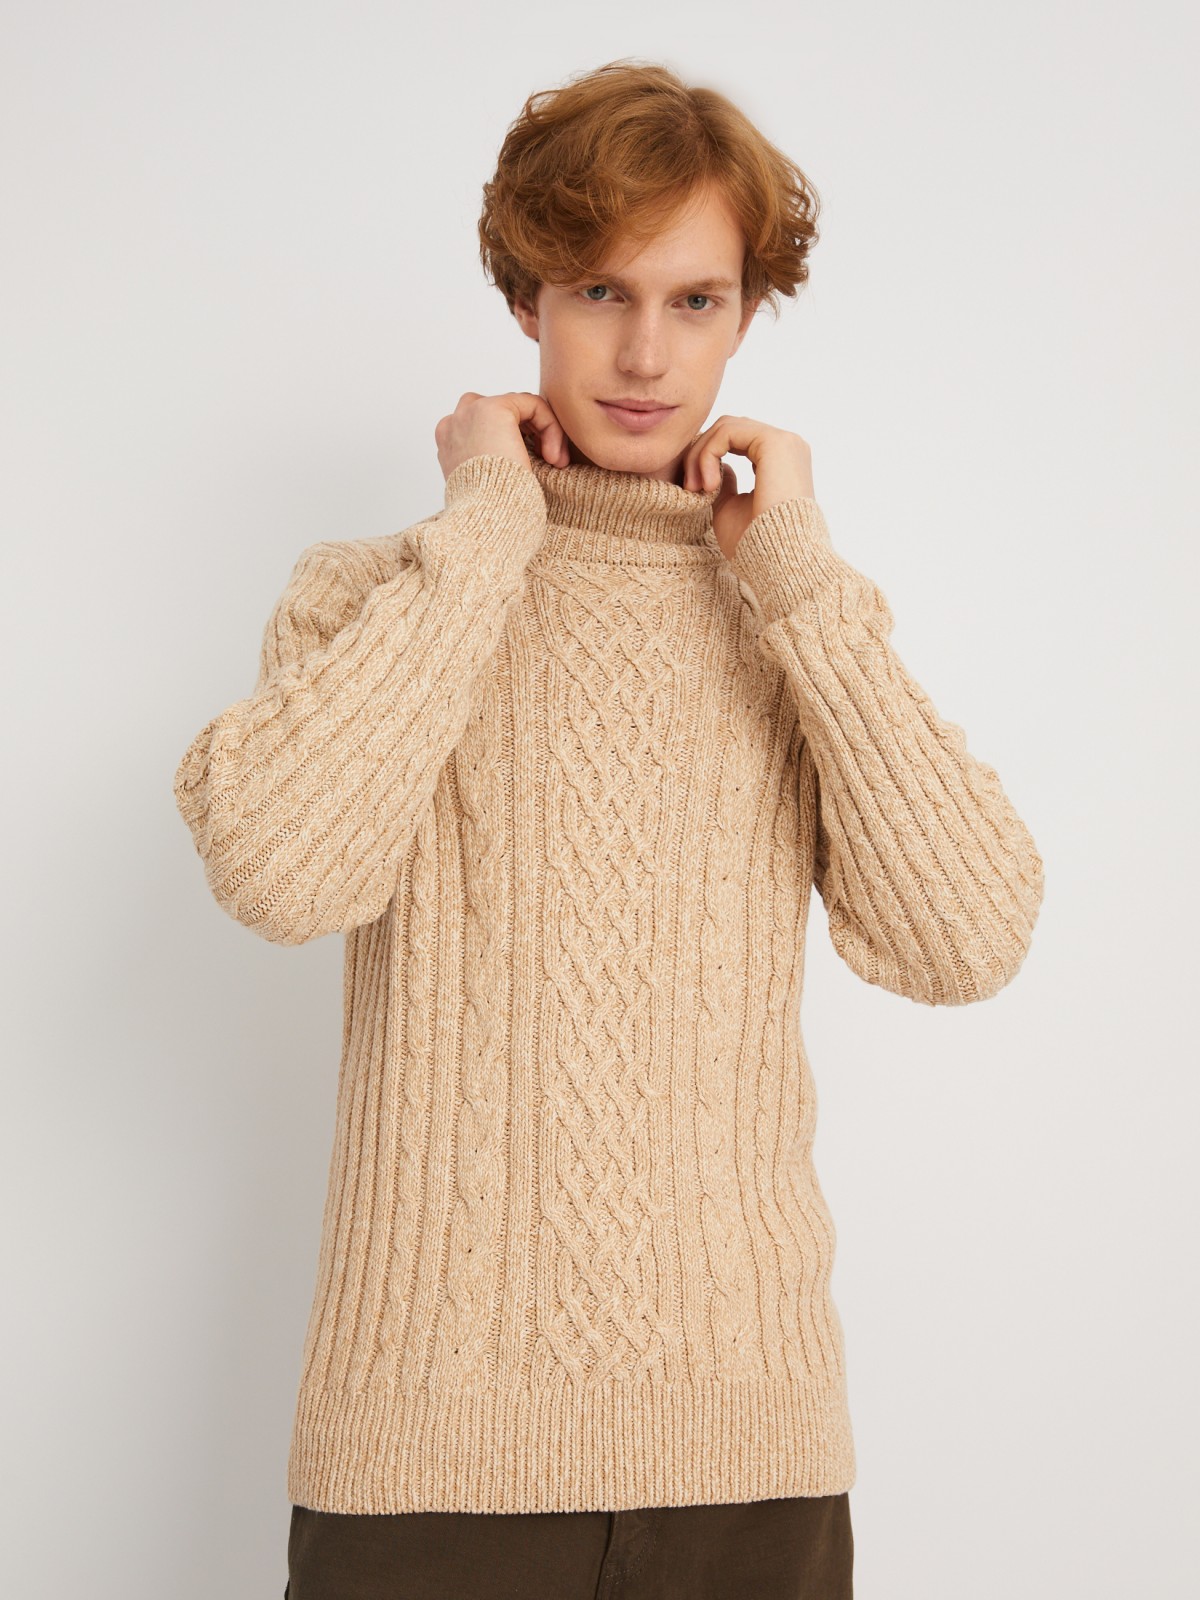 Вязаный свитер с фактурным узором косы zolla 013446165093, цвет коричневый, размер S